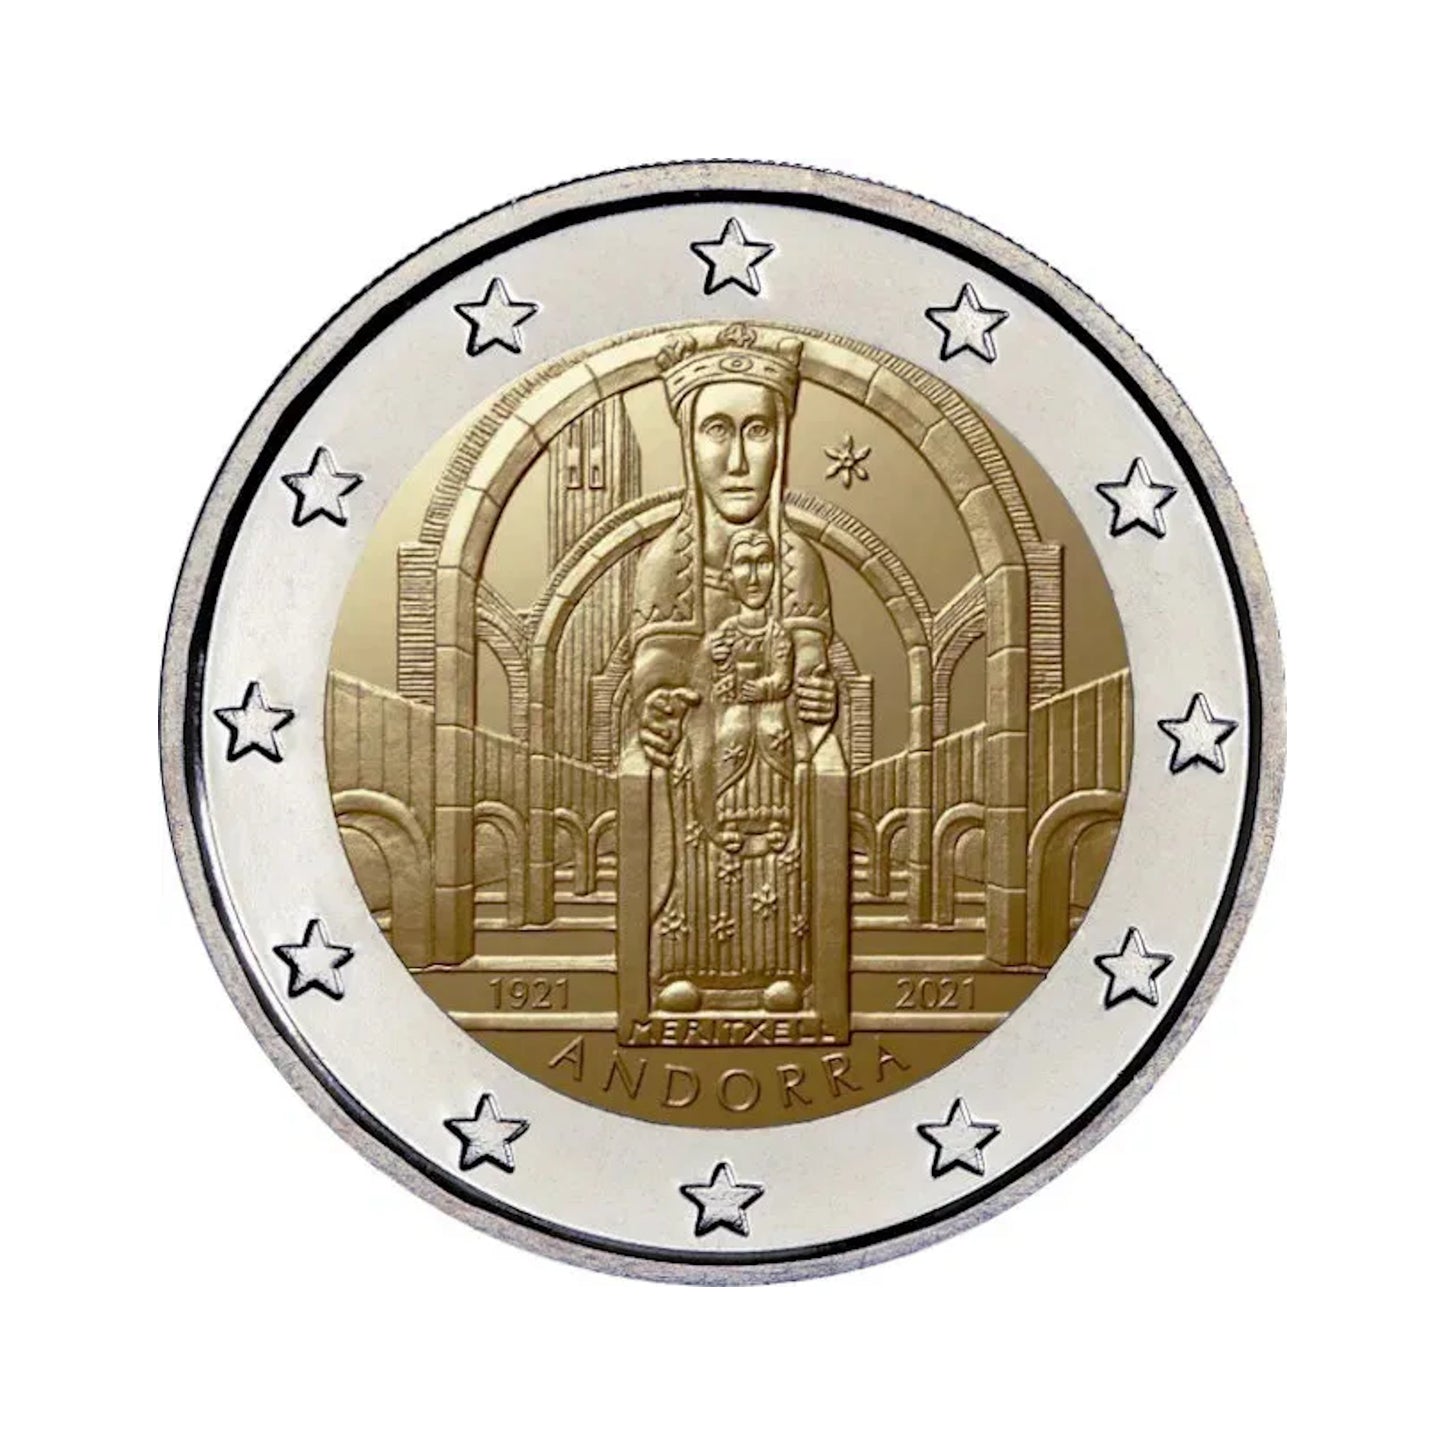 Andorra - Moneda 2 euros conmemorativa Proof 2021 -Centenario de la coronación de Nuestra Señora de Meritxell